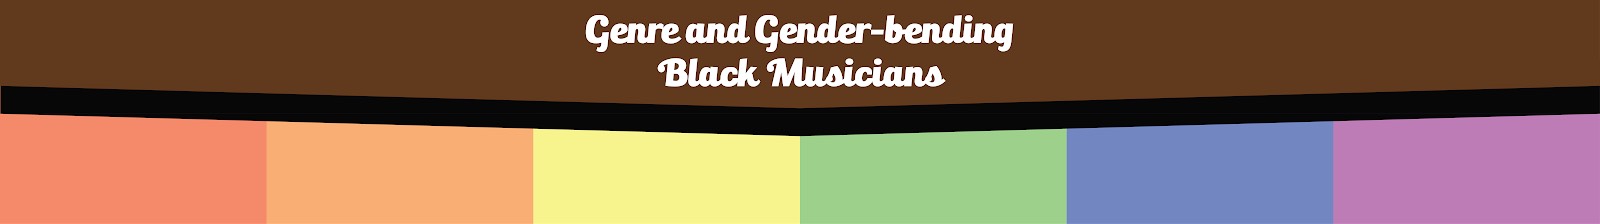 Breaking the Binary: Gender and Genre-bending Black Musicians - Sister Rosetta Tharpe, Yves Tumor, Steve Lacy, WILLOW, Little Richard